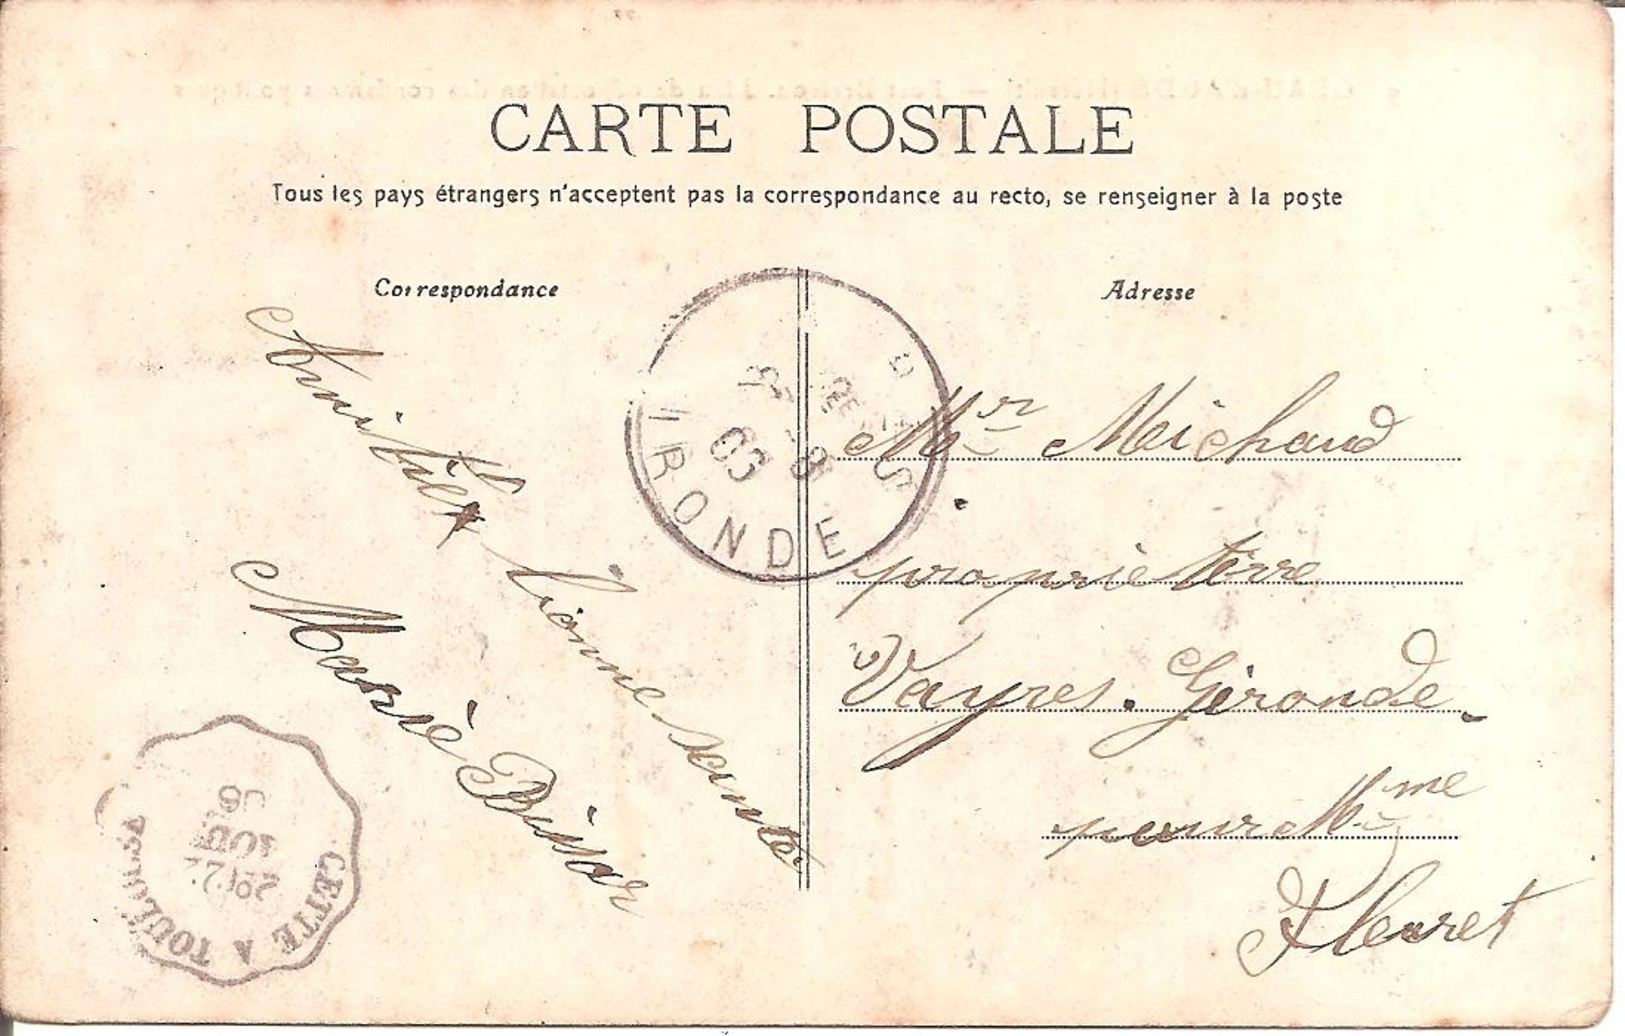 GRAU-D'AGDE (34) Fort Brescou - Lieu De Déportation Des Condamnés Politiques En 1906 (Carte Pas Courante) - Autres & Non Classés